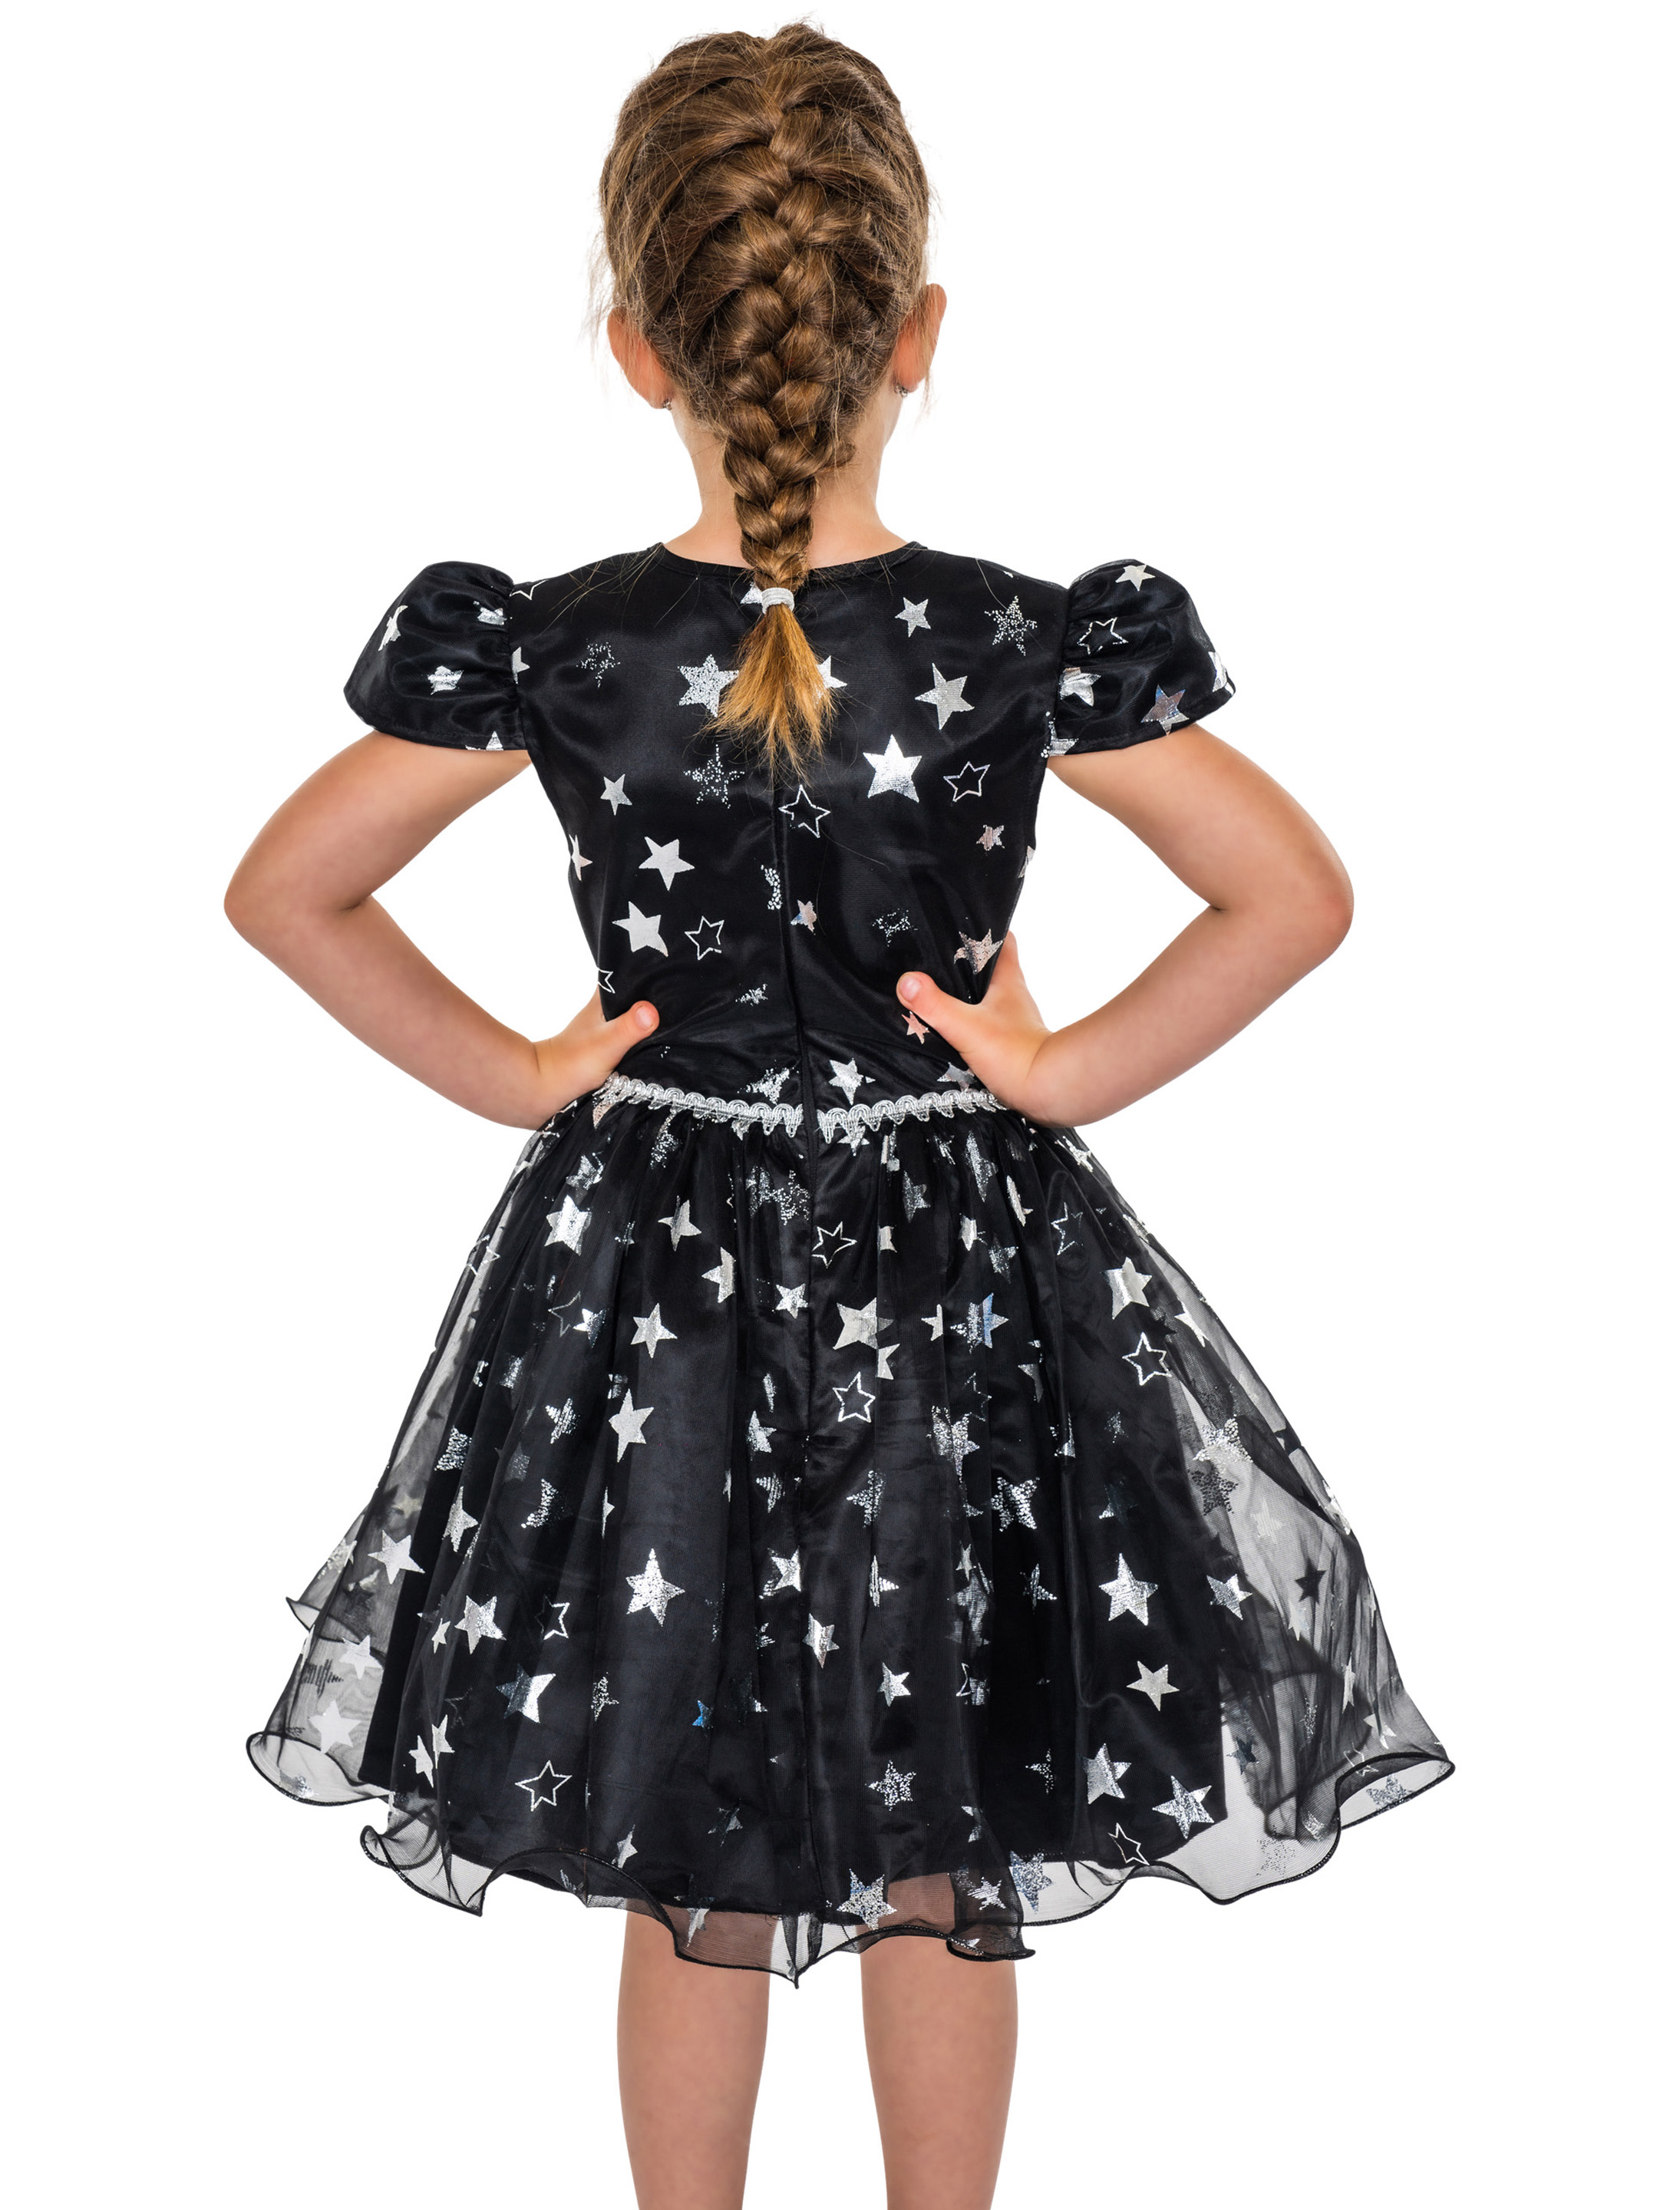 Kleid Hexe mit Sternen silber schwarz 128